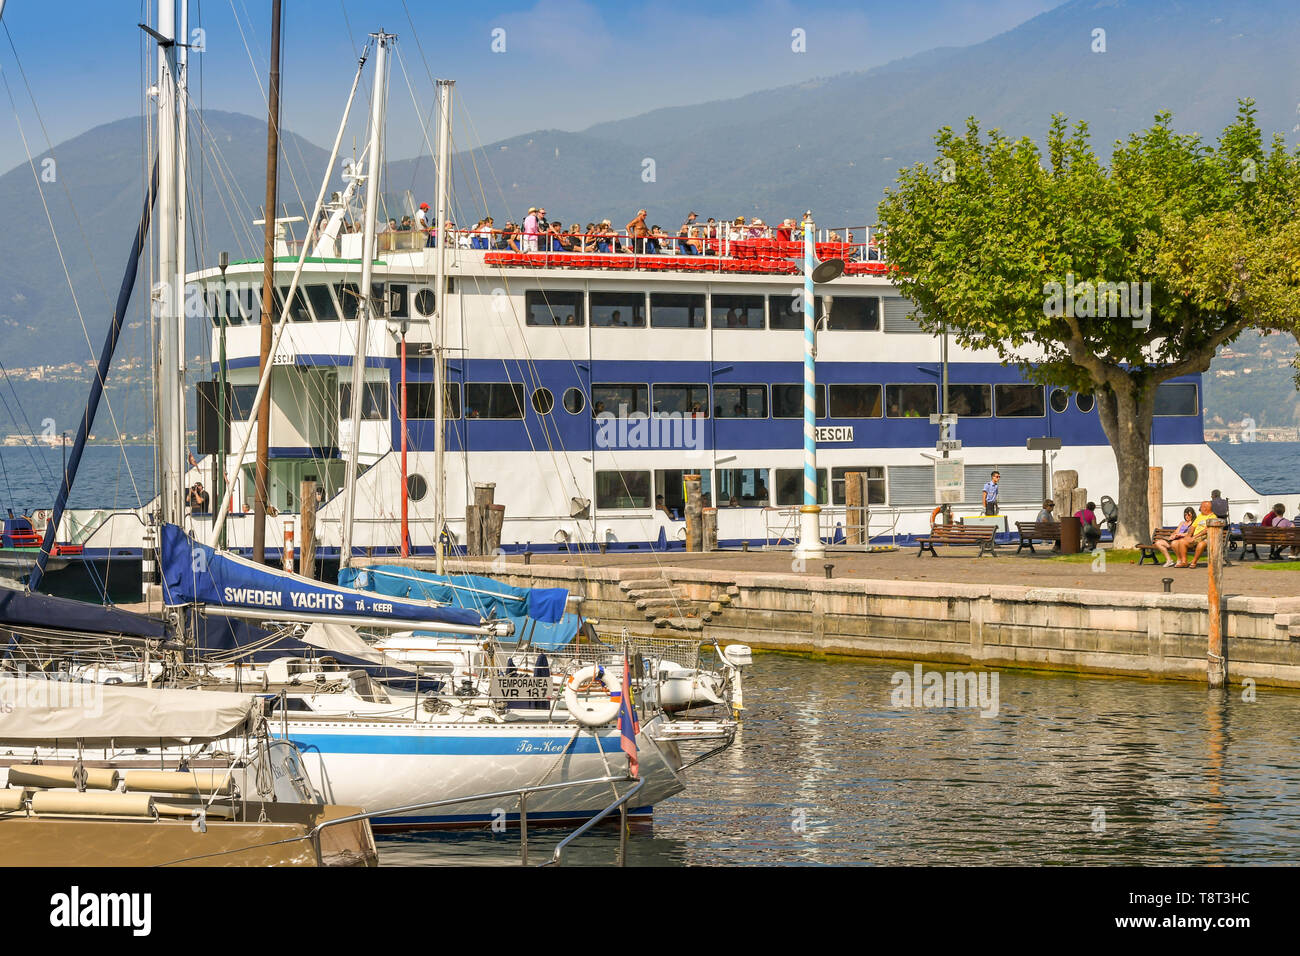 TORRI DEL BENACO SUL LAGO DI GARDA, Italia - Settembre 2018: barche a vela nel porto della città di Torri del Benaco sul Lago di Garda. Un traghetto passeggeri è Foto Stock